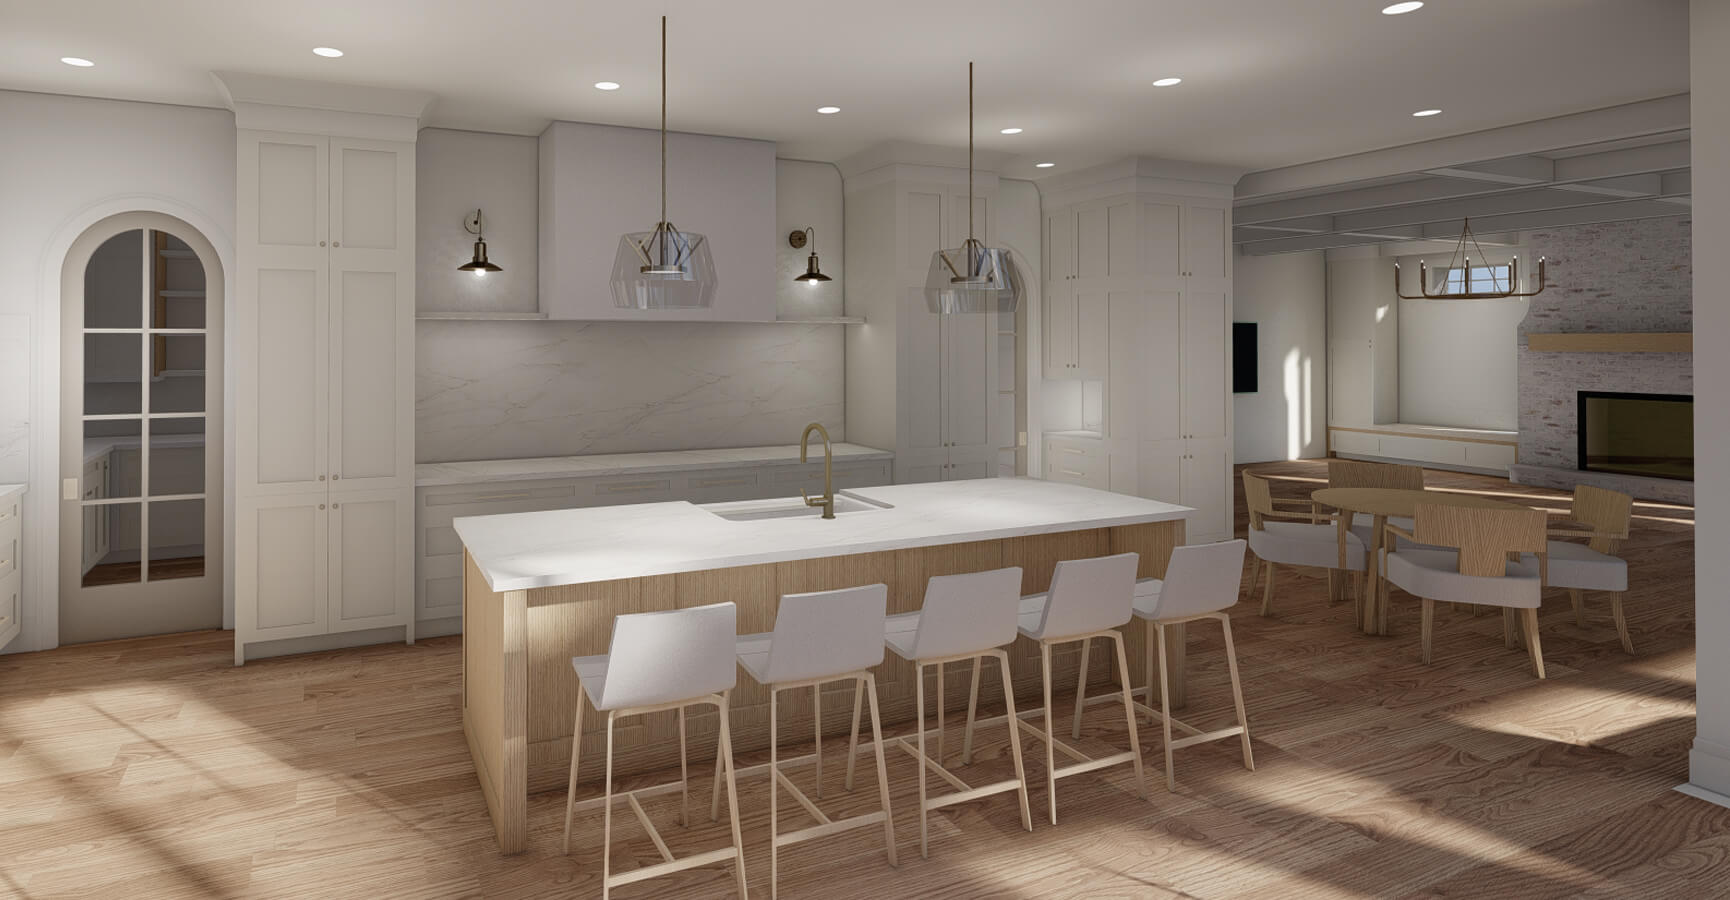 Elegant and bright modern kitchen design rendering